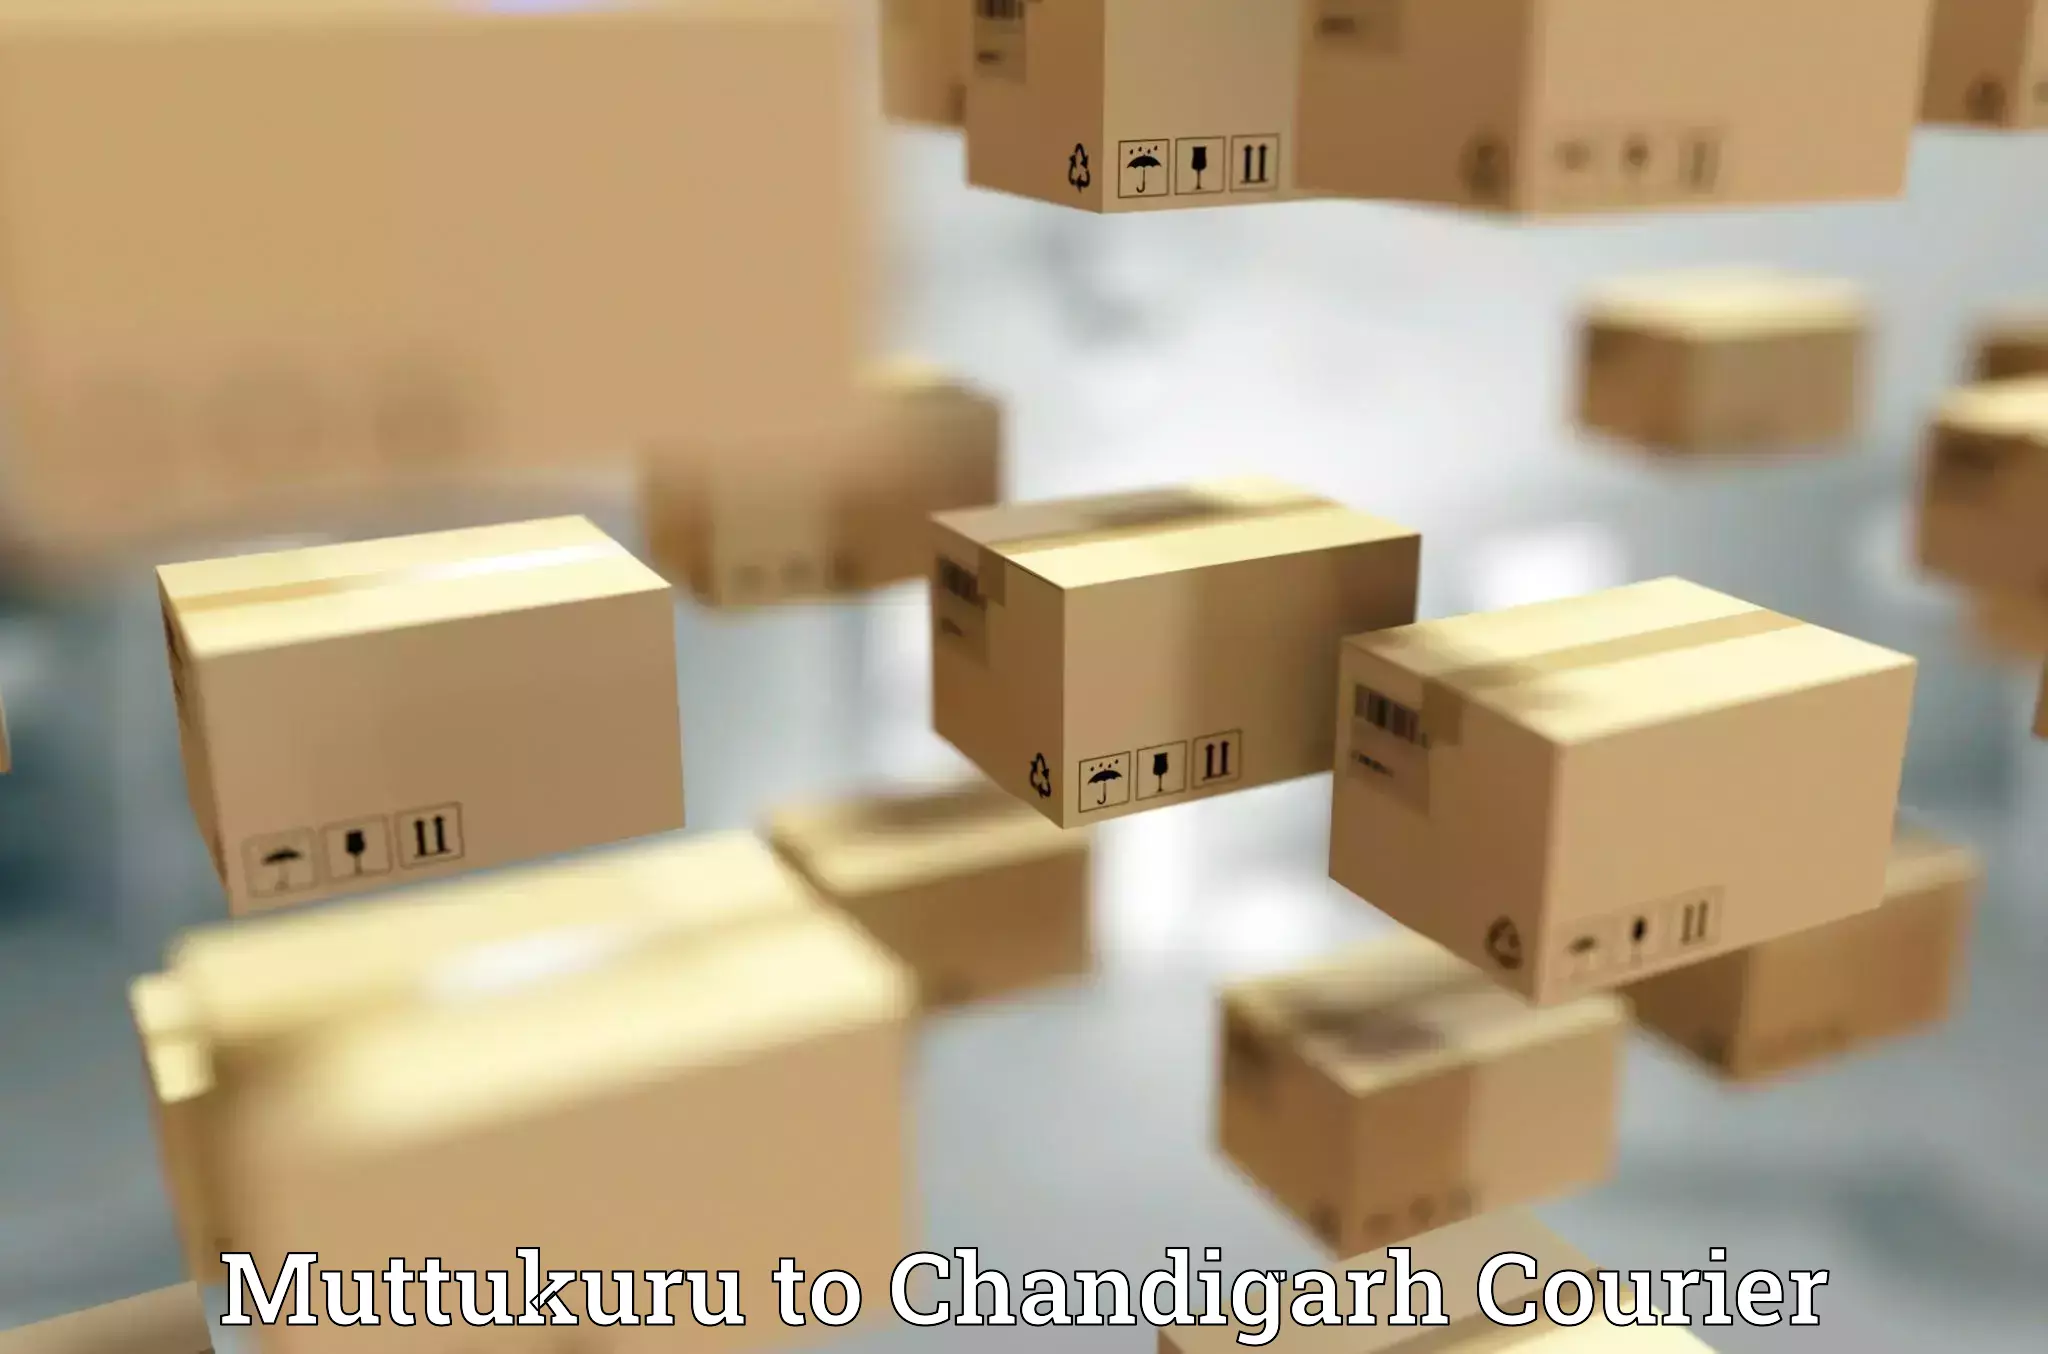 International courier networks Muttukuru to Chandigarh